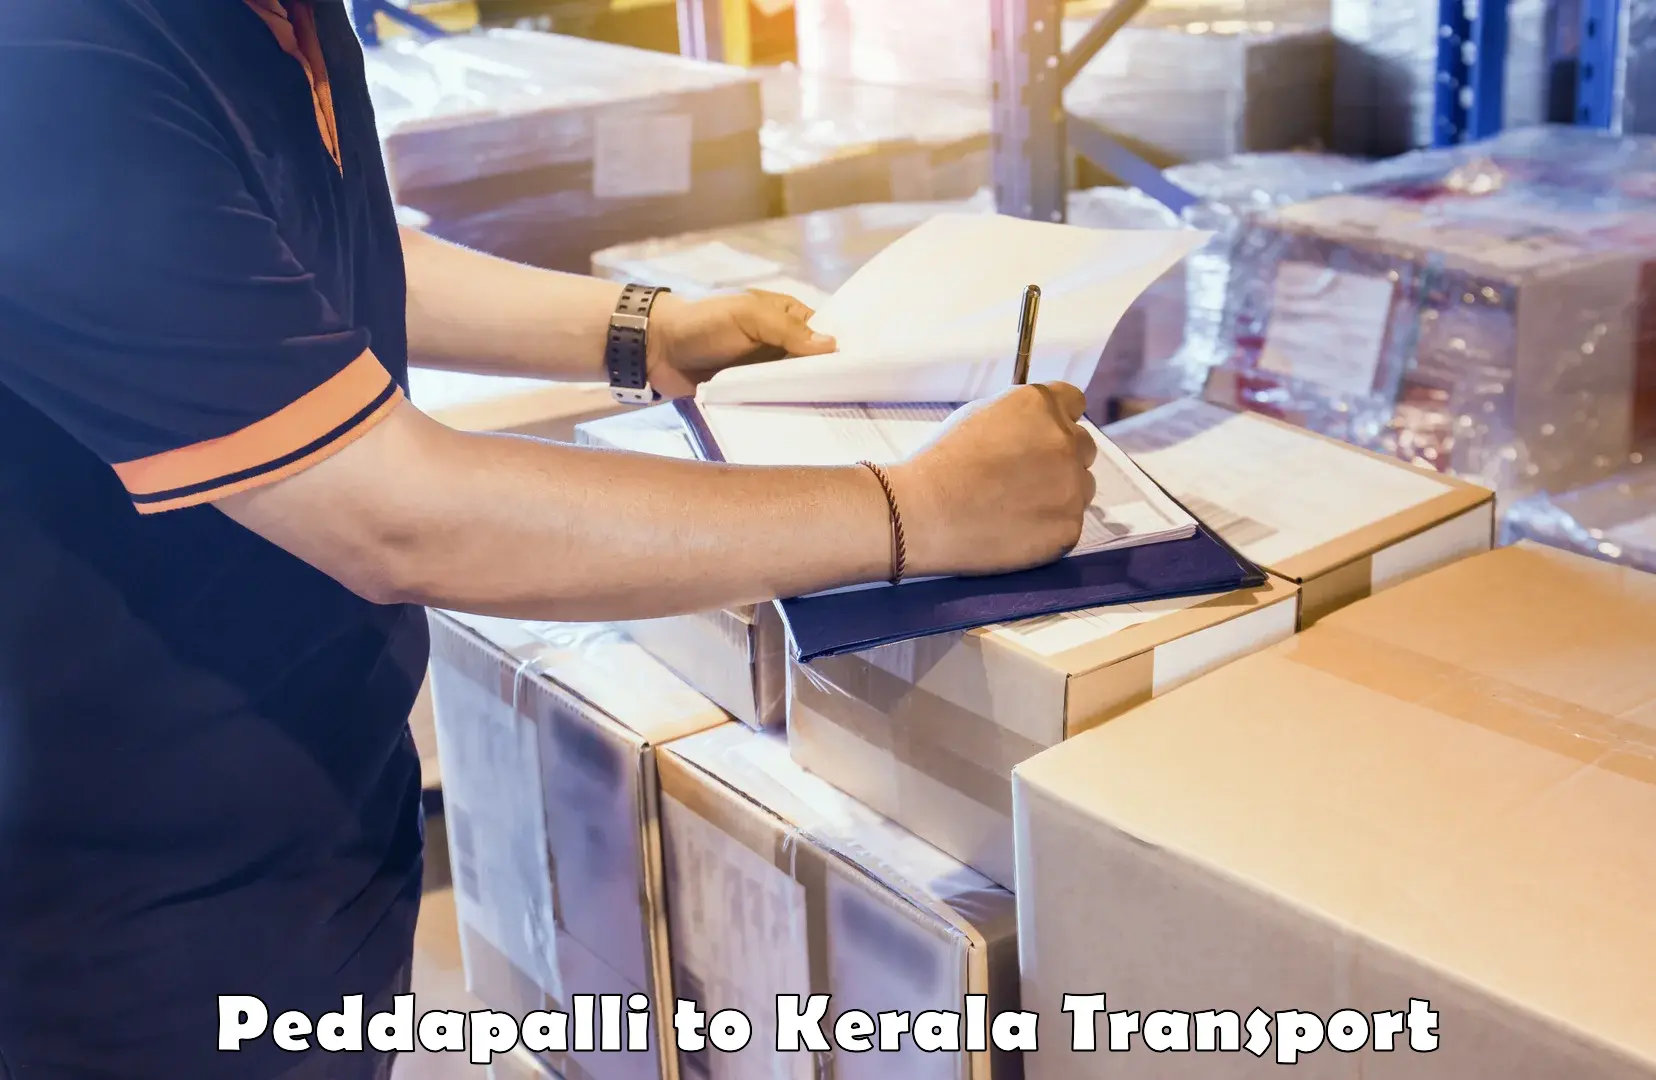 Interstate transport services Peddapalli to Vadakkencherry